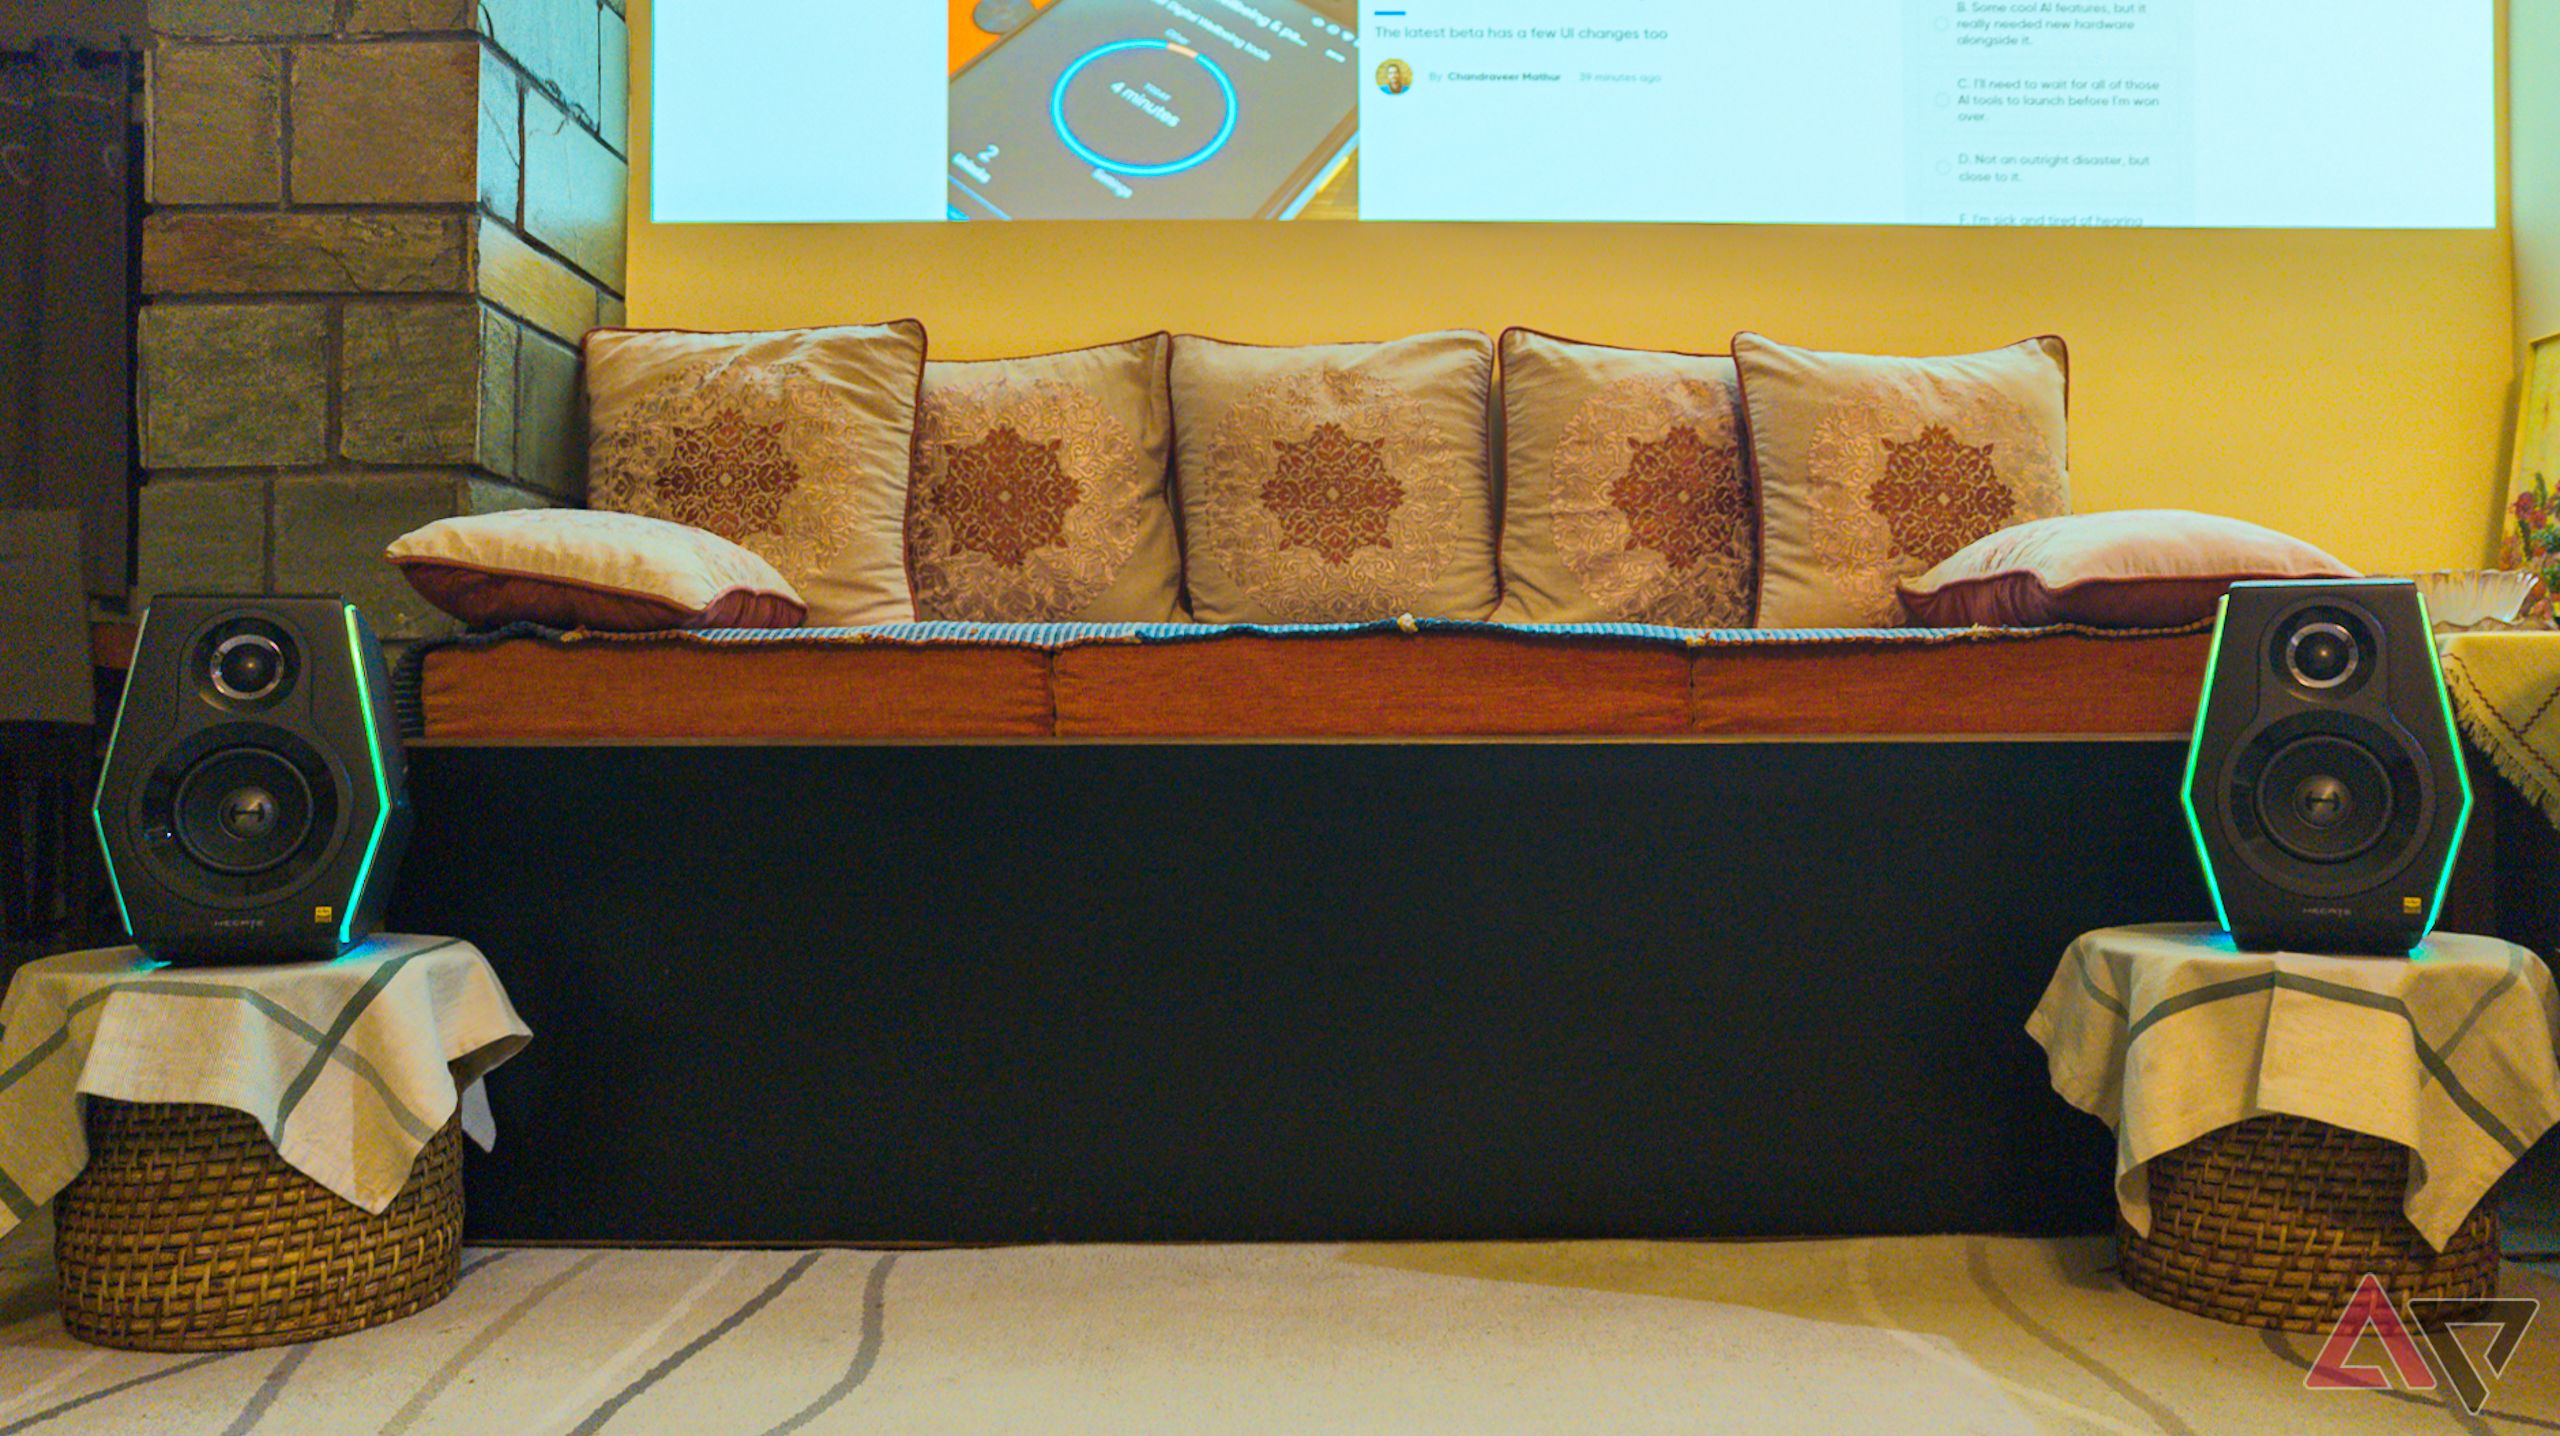 Alto-falantes flanqueando um assento em uma sala de estar com uma tela de projetor visível ao fundo